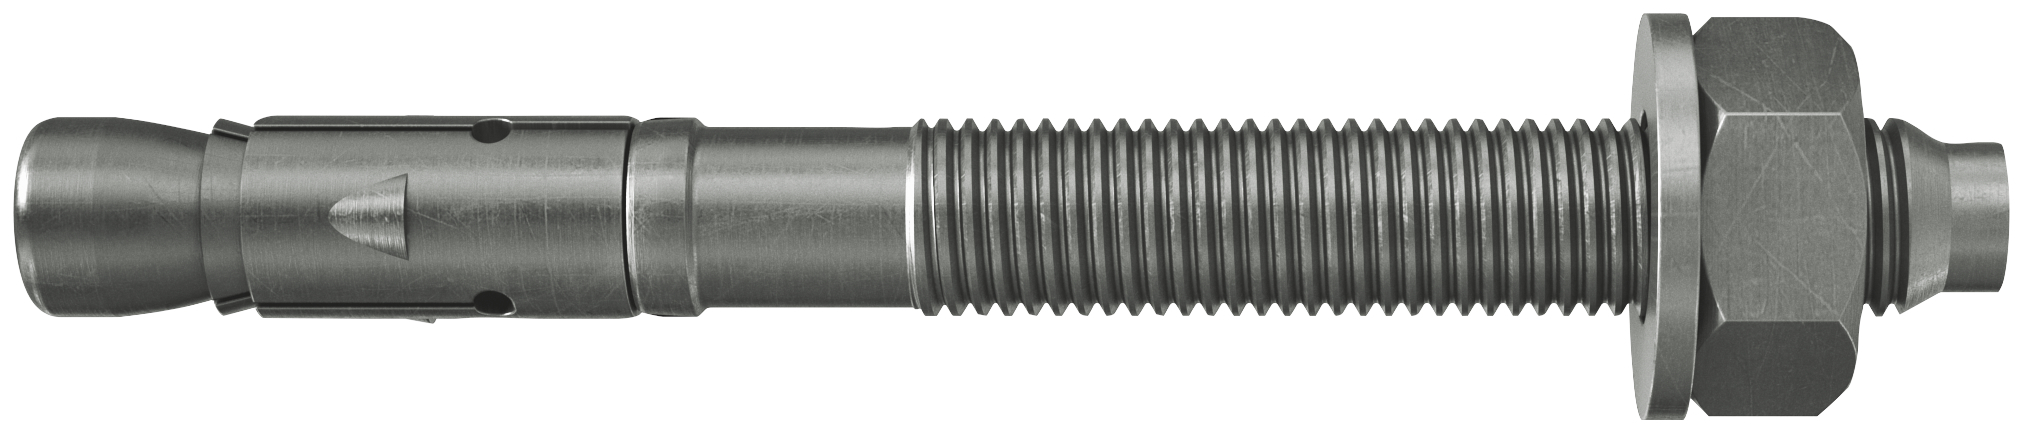 fischer Tassello acciaio FAZ II 8/50 A4 (50 Pz.) L'ancorante ad espansione ad alte prestazioni per carichi statici su calcestruzzo fessurato e per applicazioni sismiche. Versione in acciaio inossidabile con classe di resistenza alla corrosione CRC III..